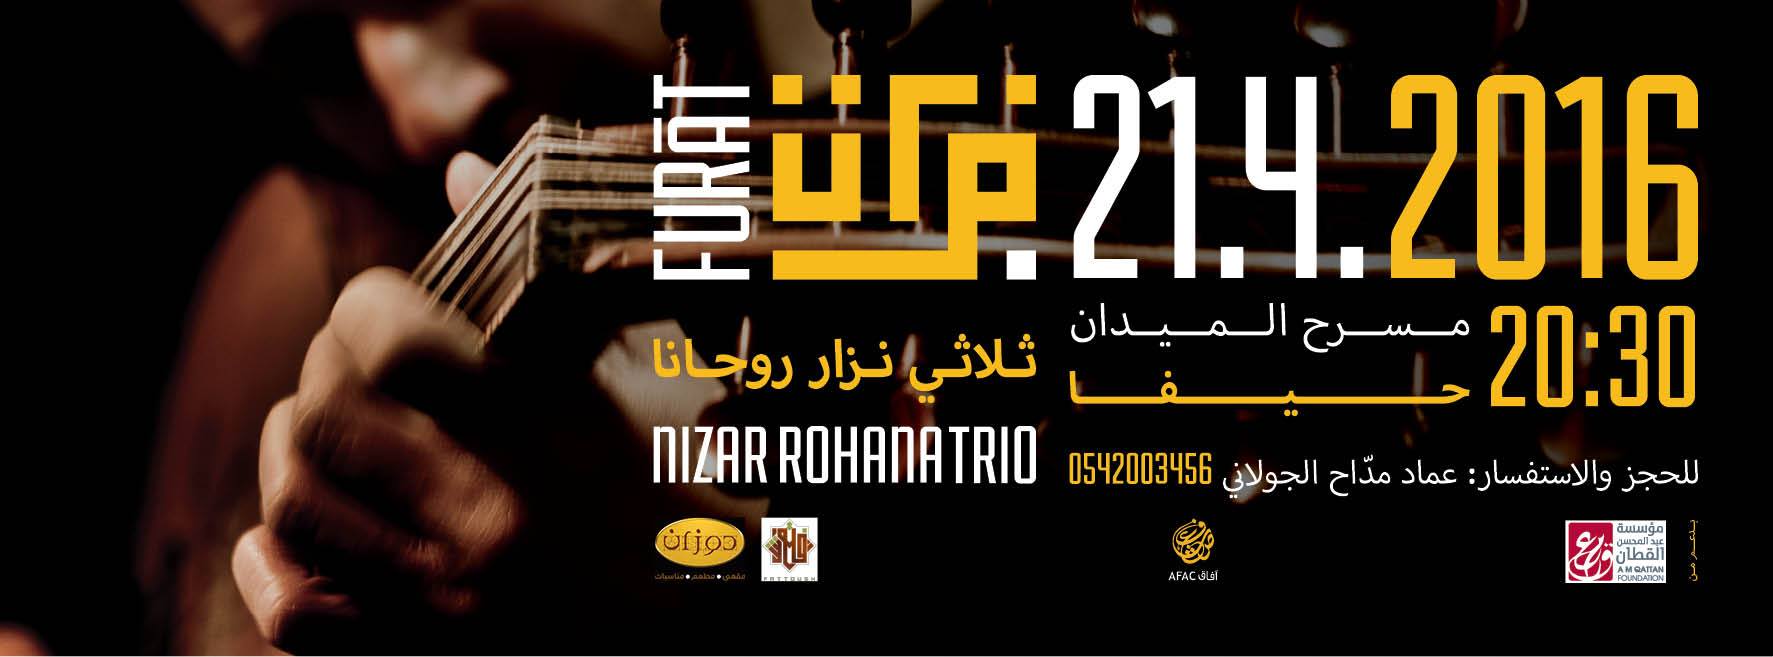 دعوة لحضور عرض موسيقي للثلاثي نزار روحانا  فُرات  في حيفا